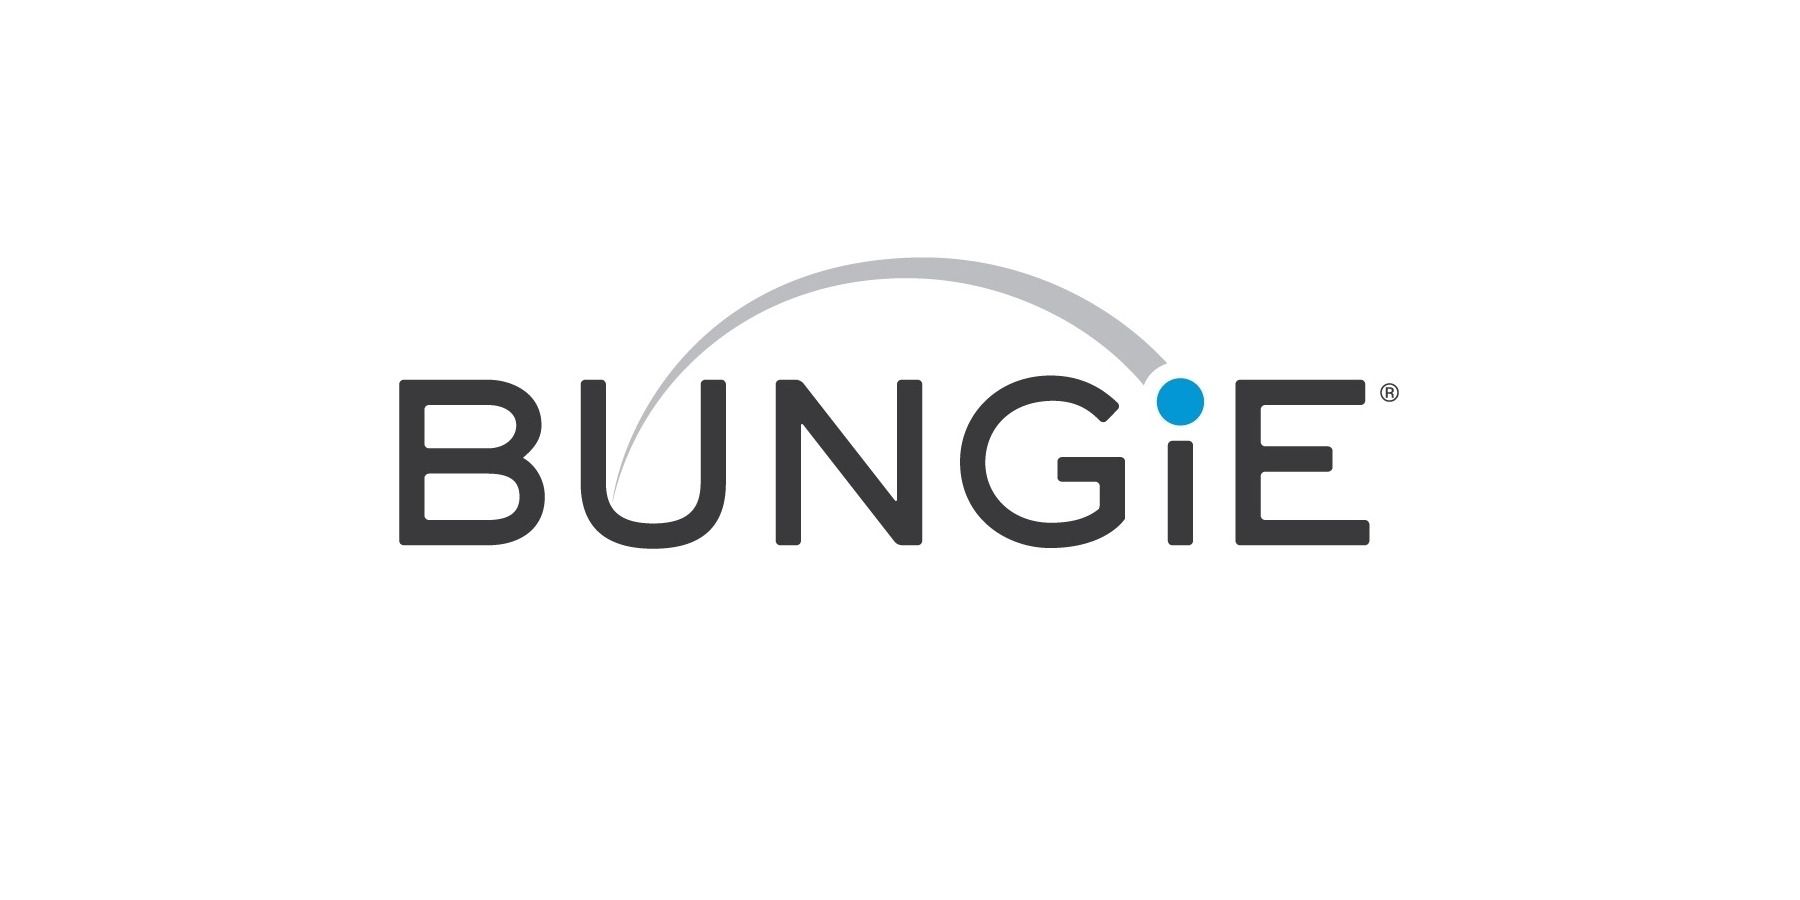 Следующая игра Bungie может быть от третьего лица